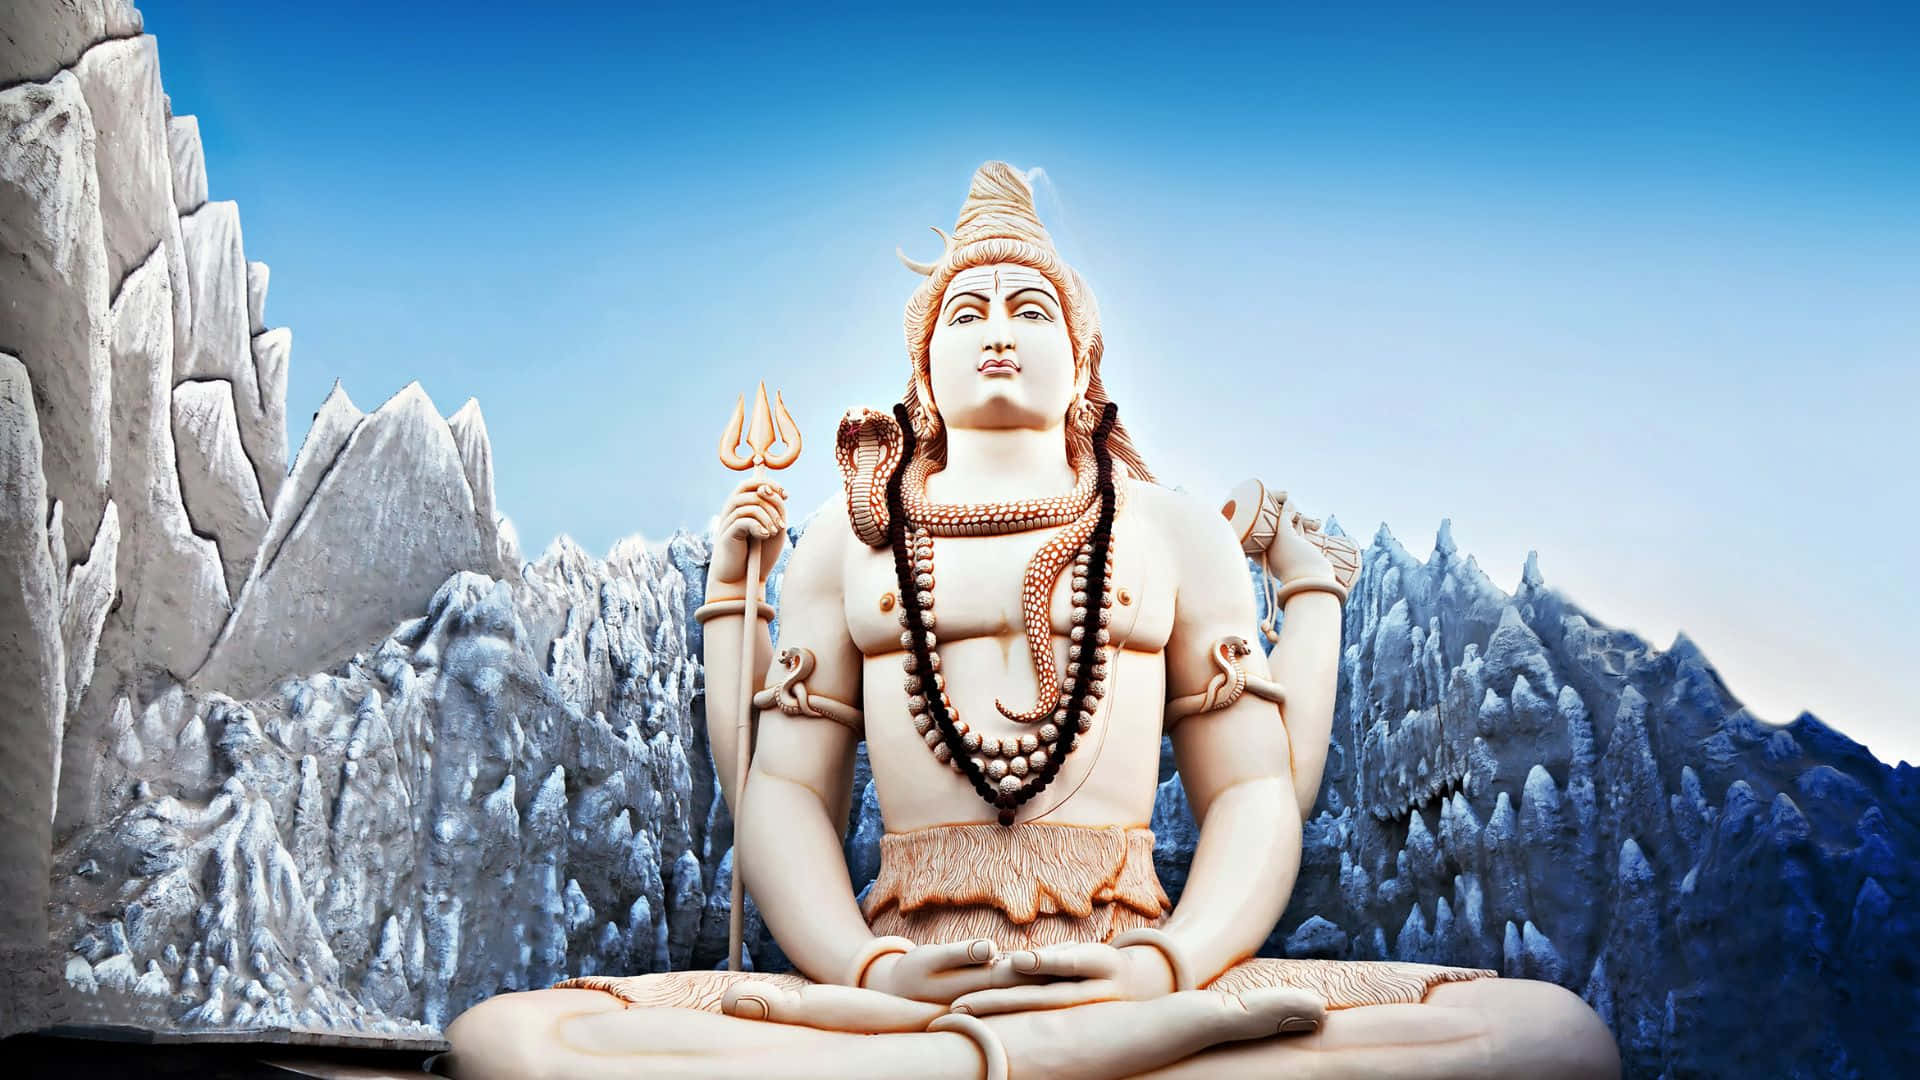 Ammirazioneverso Il Signore Shiva